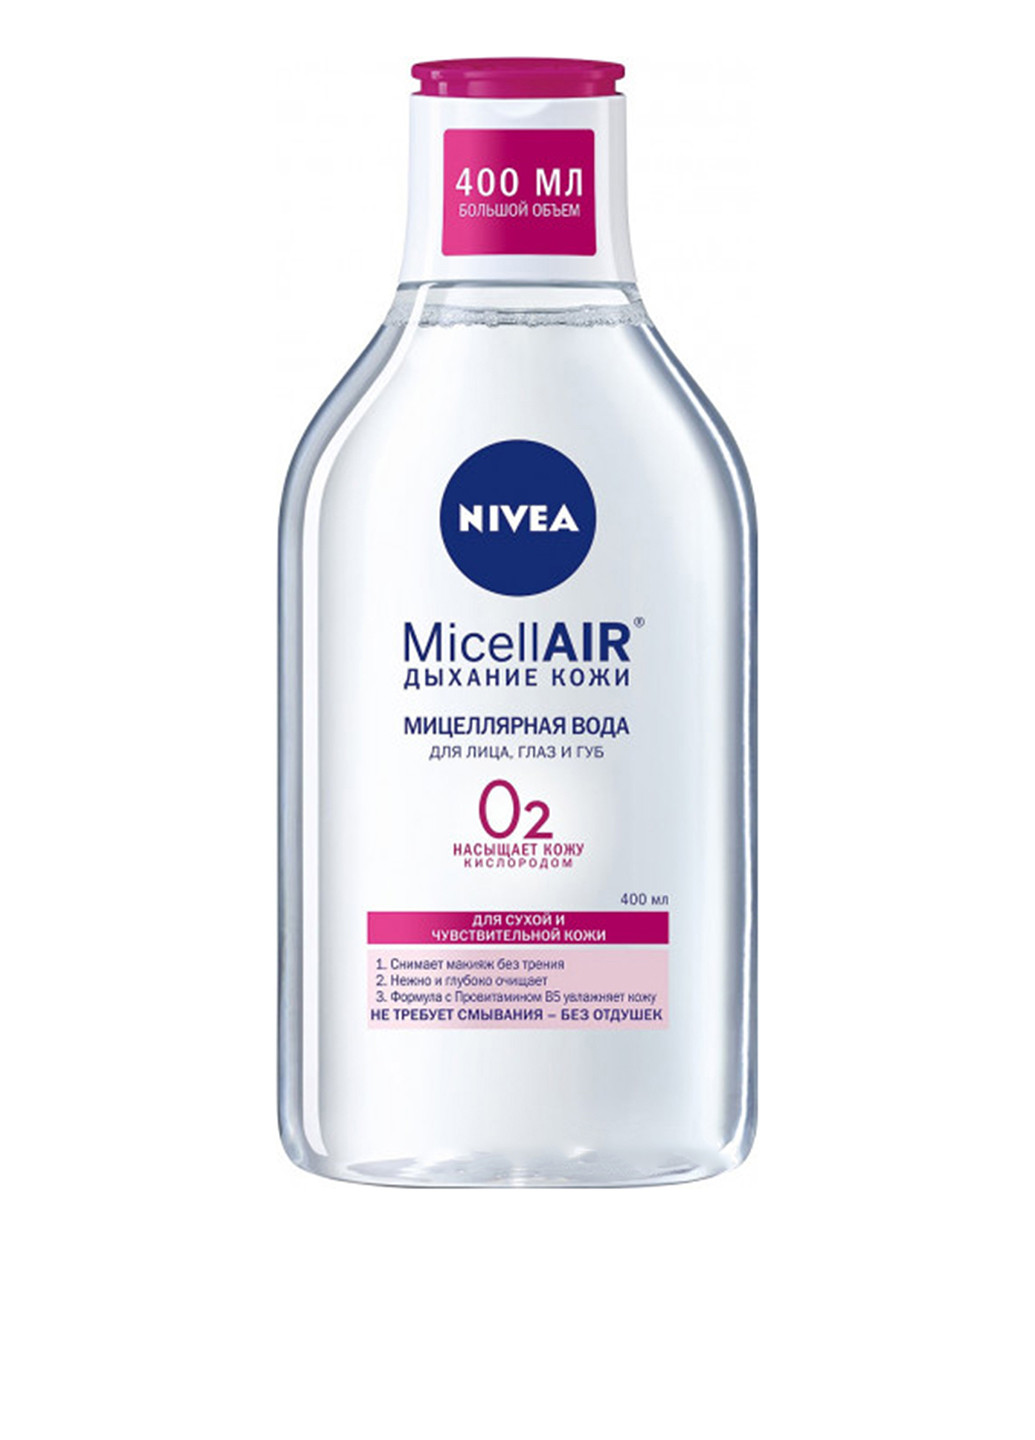 Мицеллярная вода для сухой и чувствительной кожи MicellAIR, 400 мл Nivea (160878729)